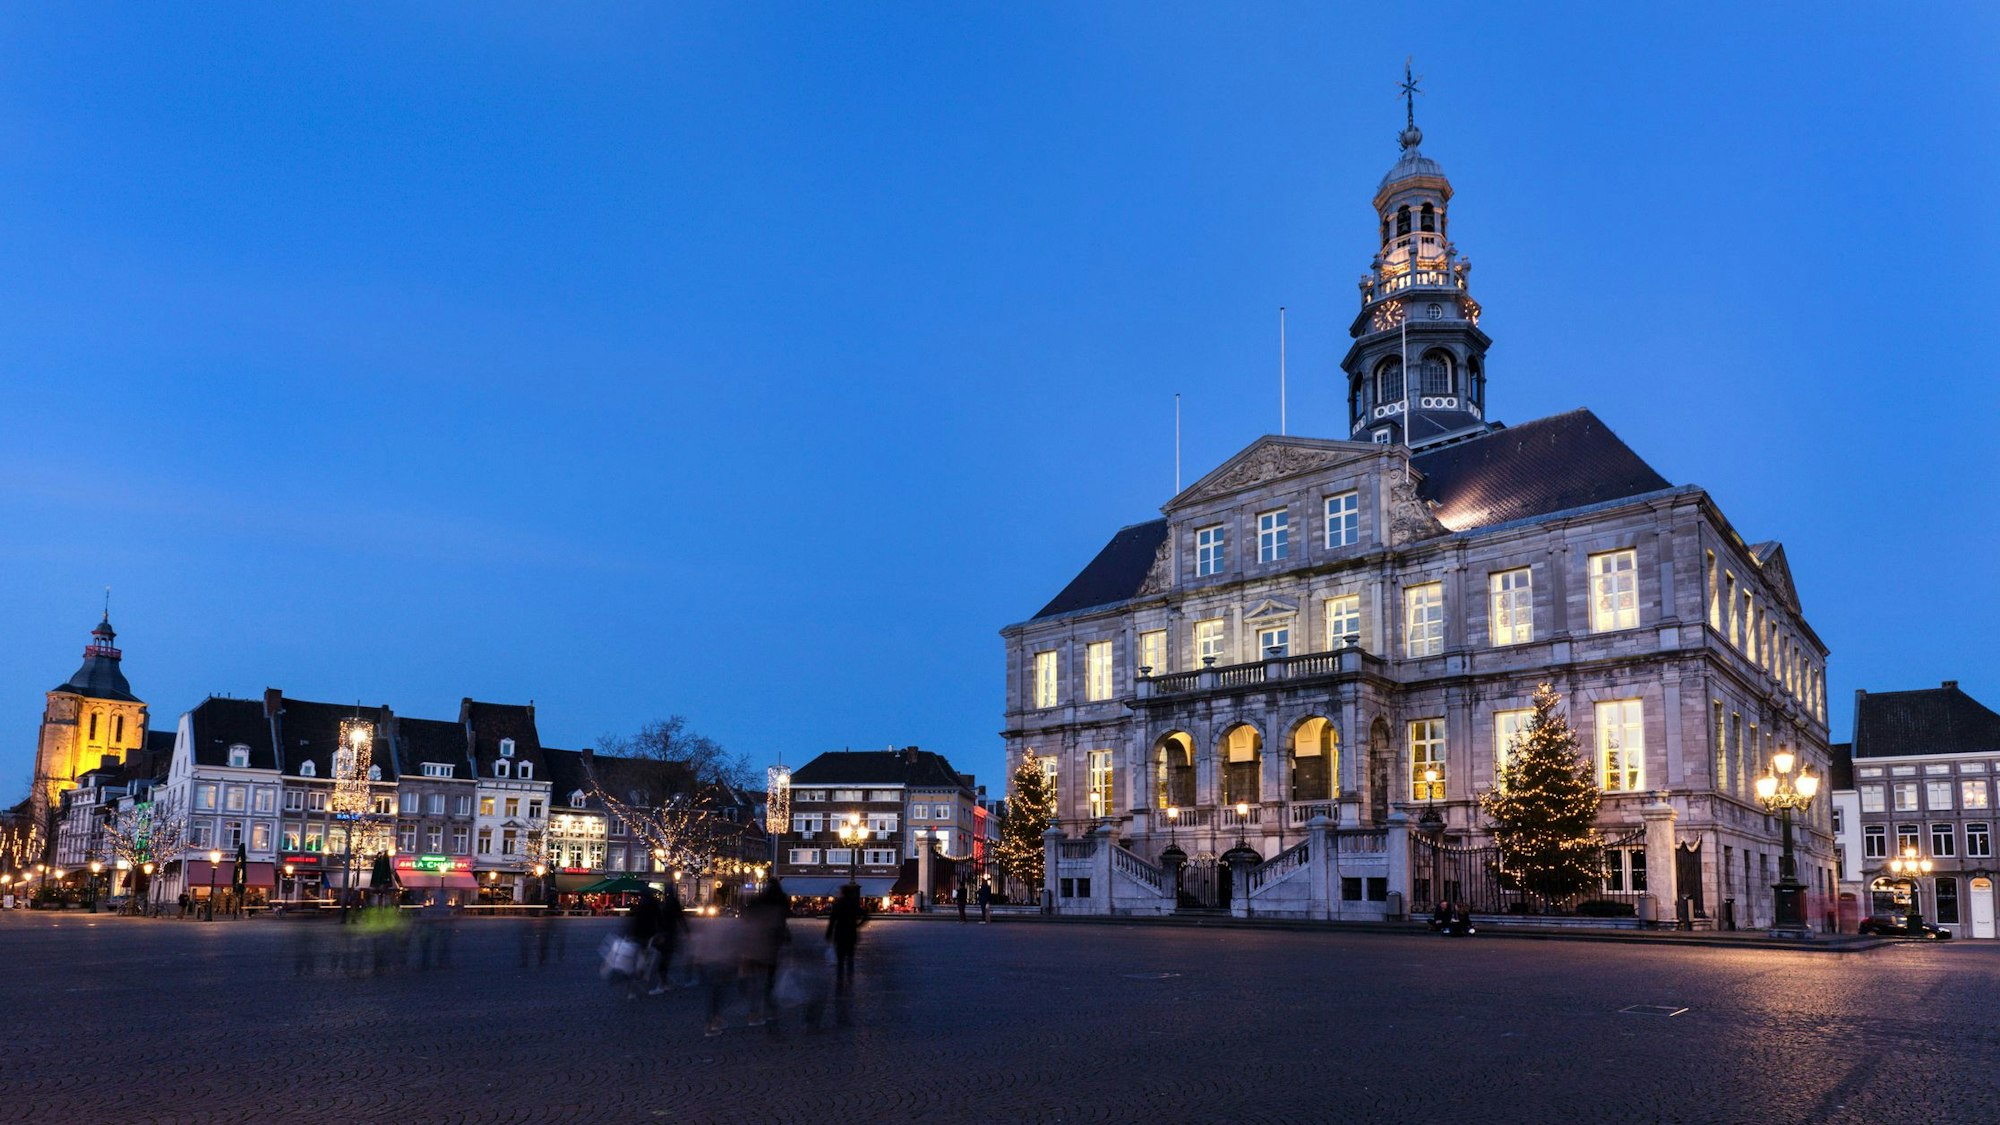 Auf dem Foto sieht man das Rathaus und den Marktplatz bei Nacht.